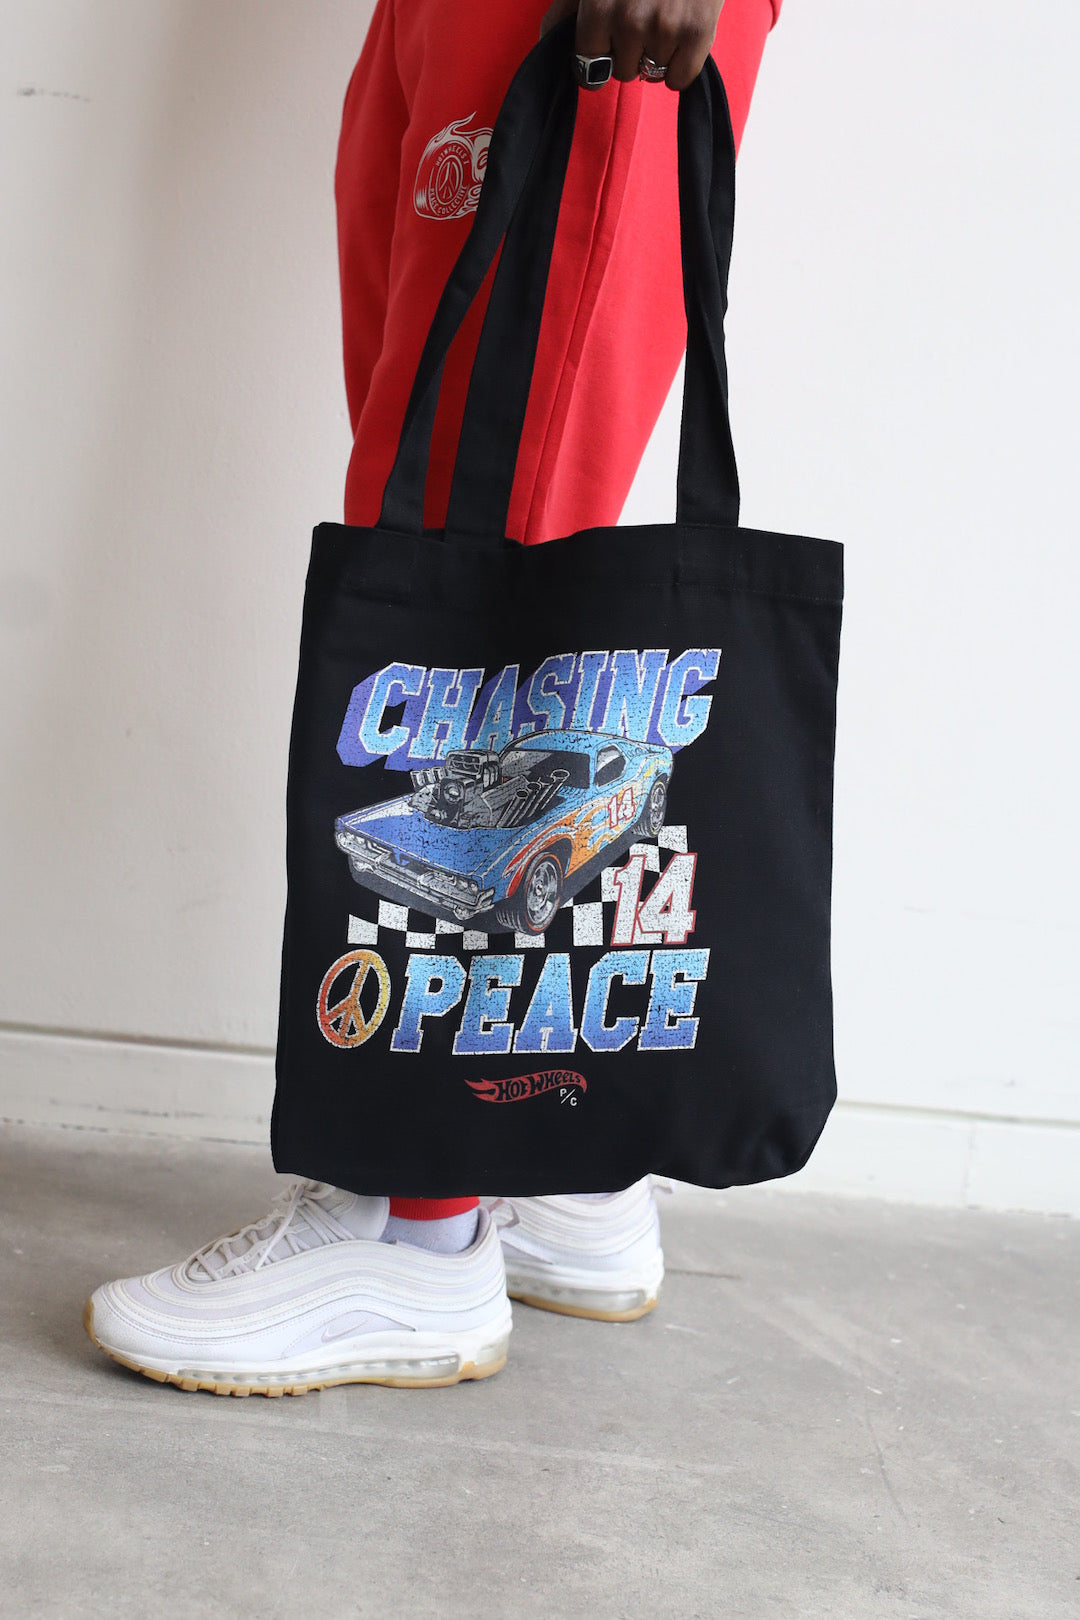 Chasing Peace Racing Totebag - Black